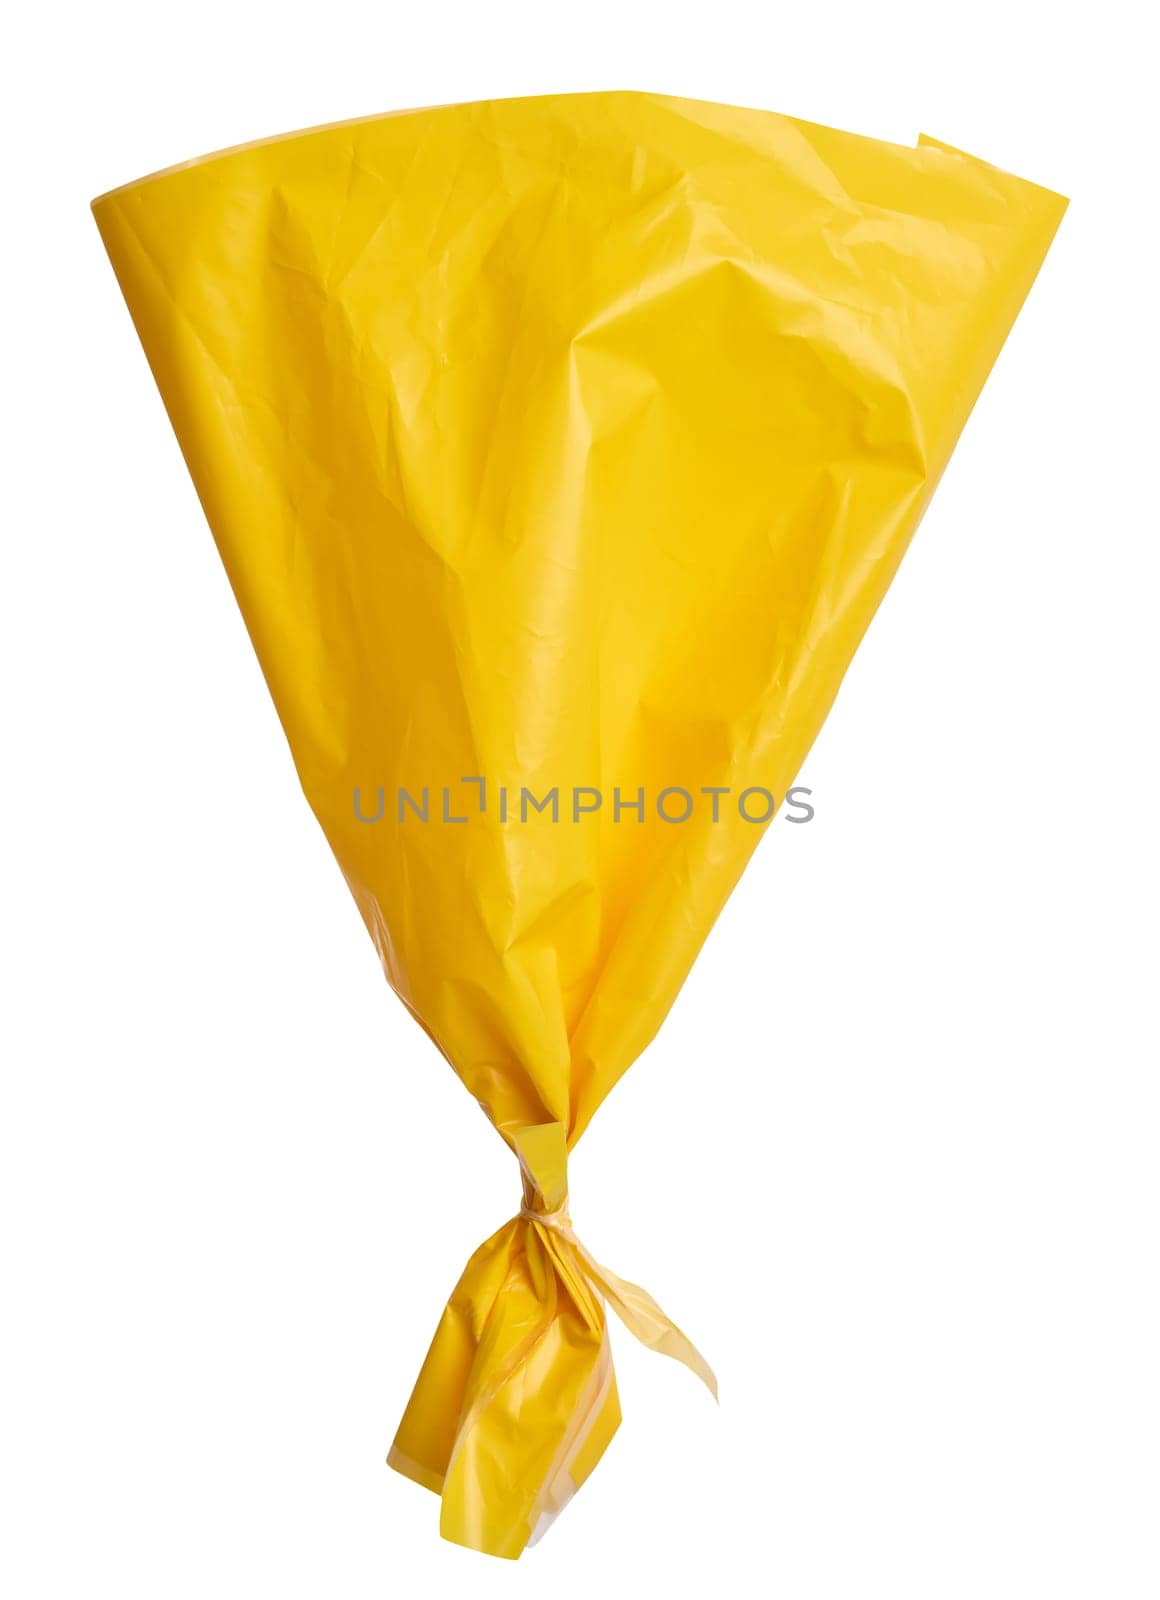 Yellow plastic bag on isolated background by ndanko